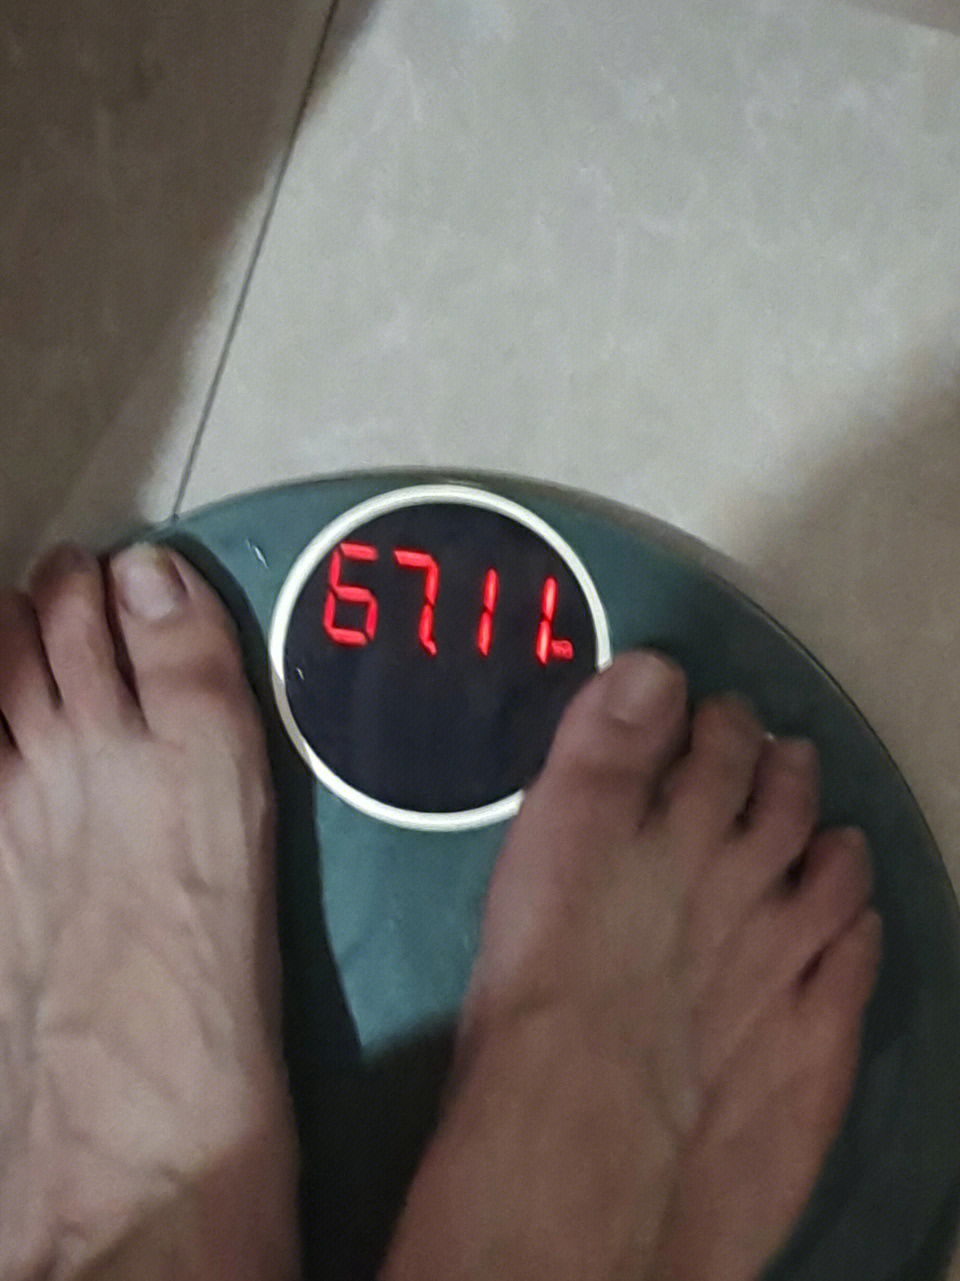 浅记录一下体重吧我从小都比正常人胖,到了初中更是突破160,虽然那个